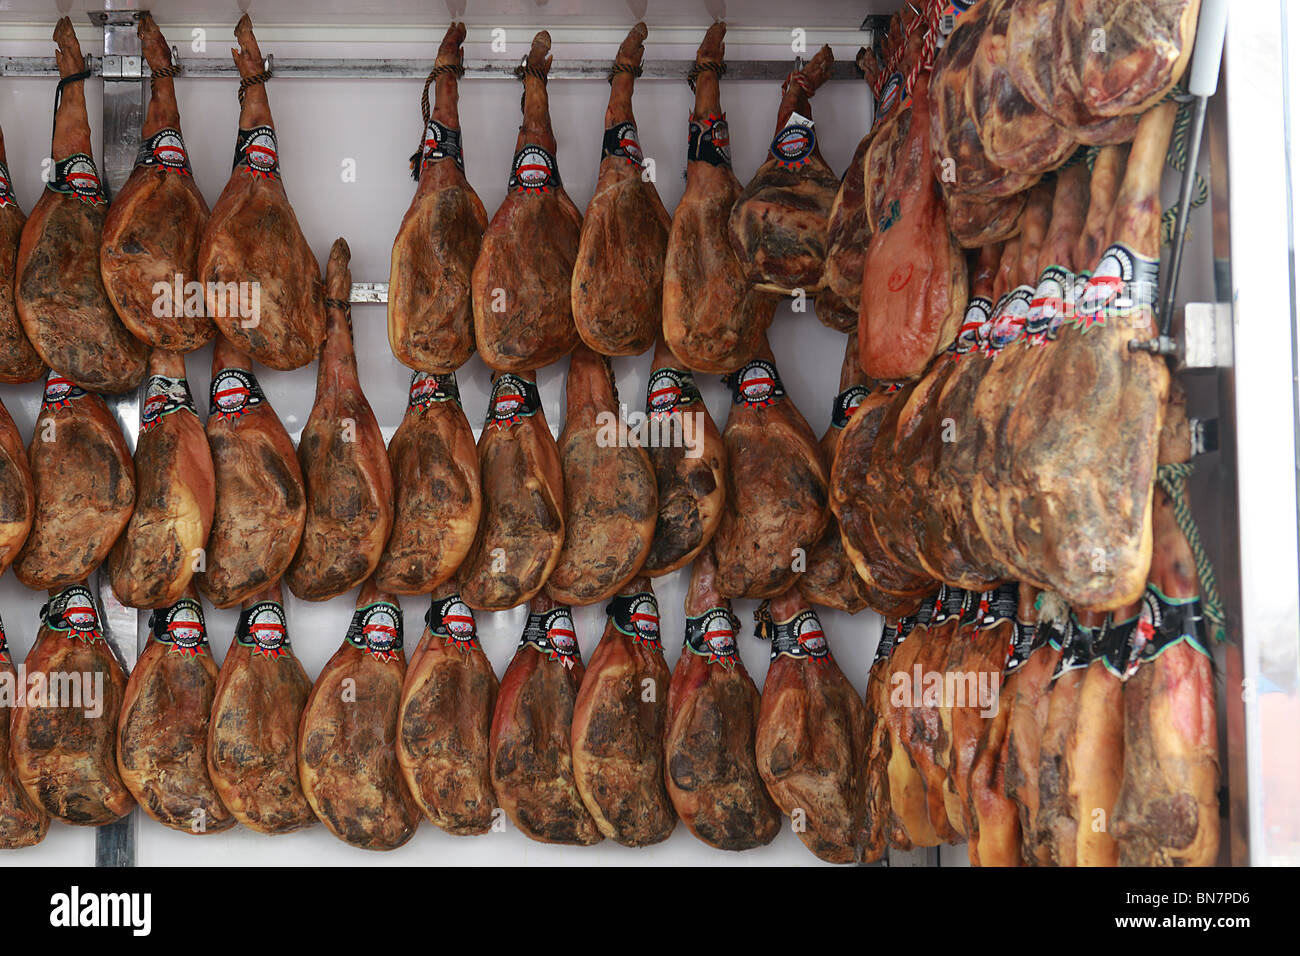 Spanish Iberian Ham Smoked Market Stock Photo